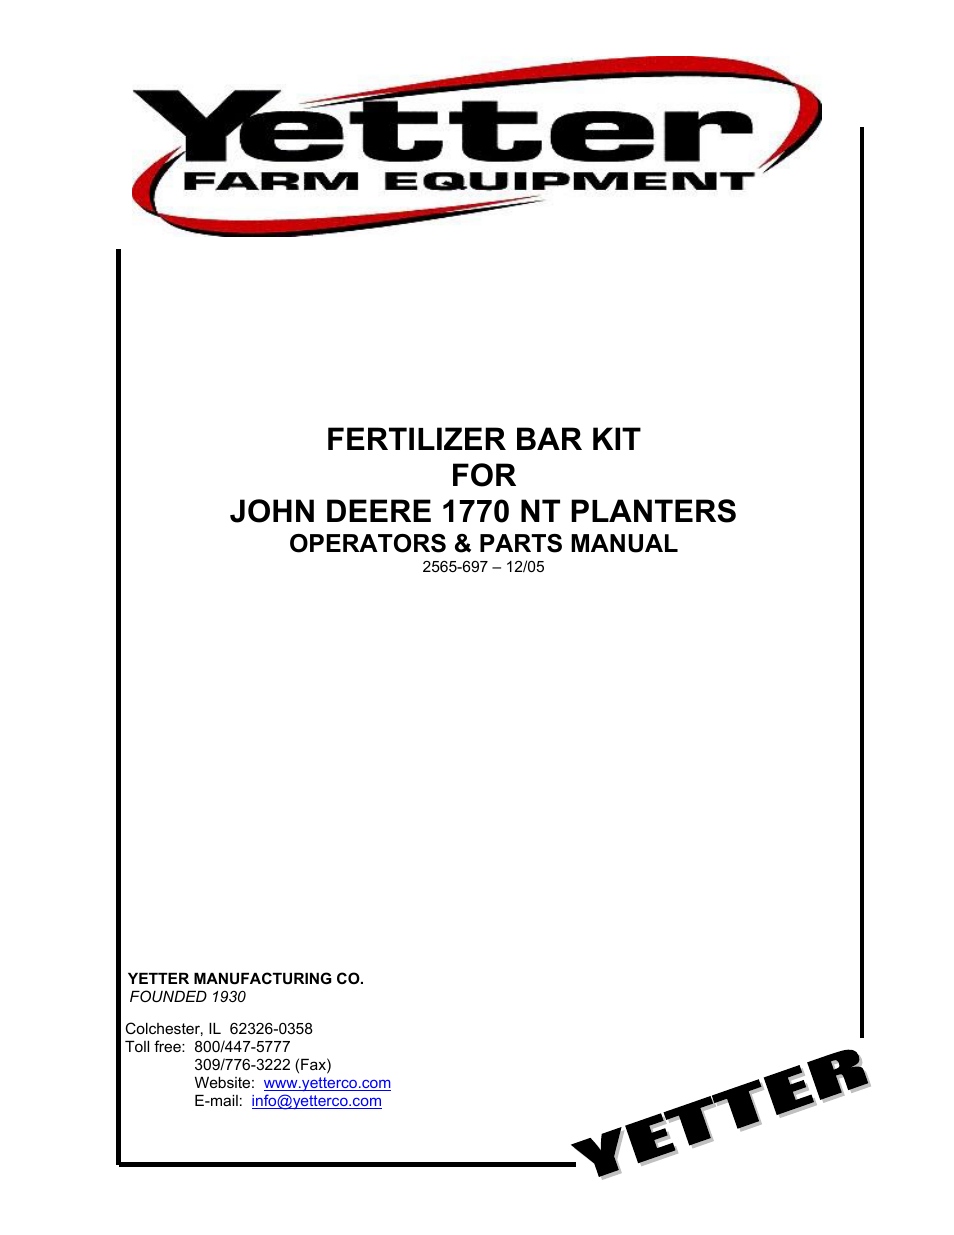 2995-170 Fertilizer Bar Kit for John Deere 1770 NT Planters